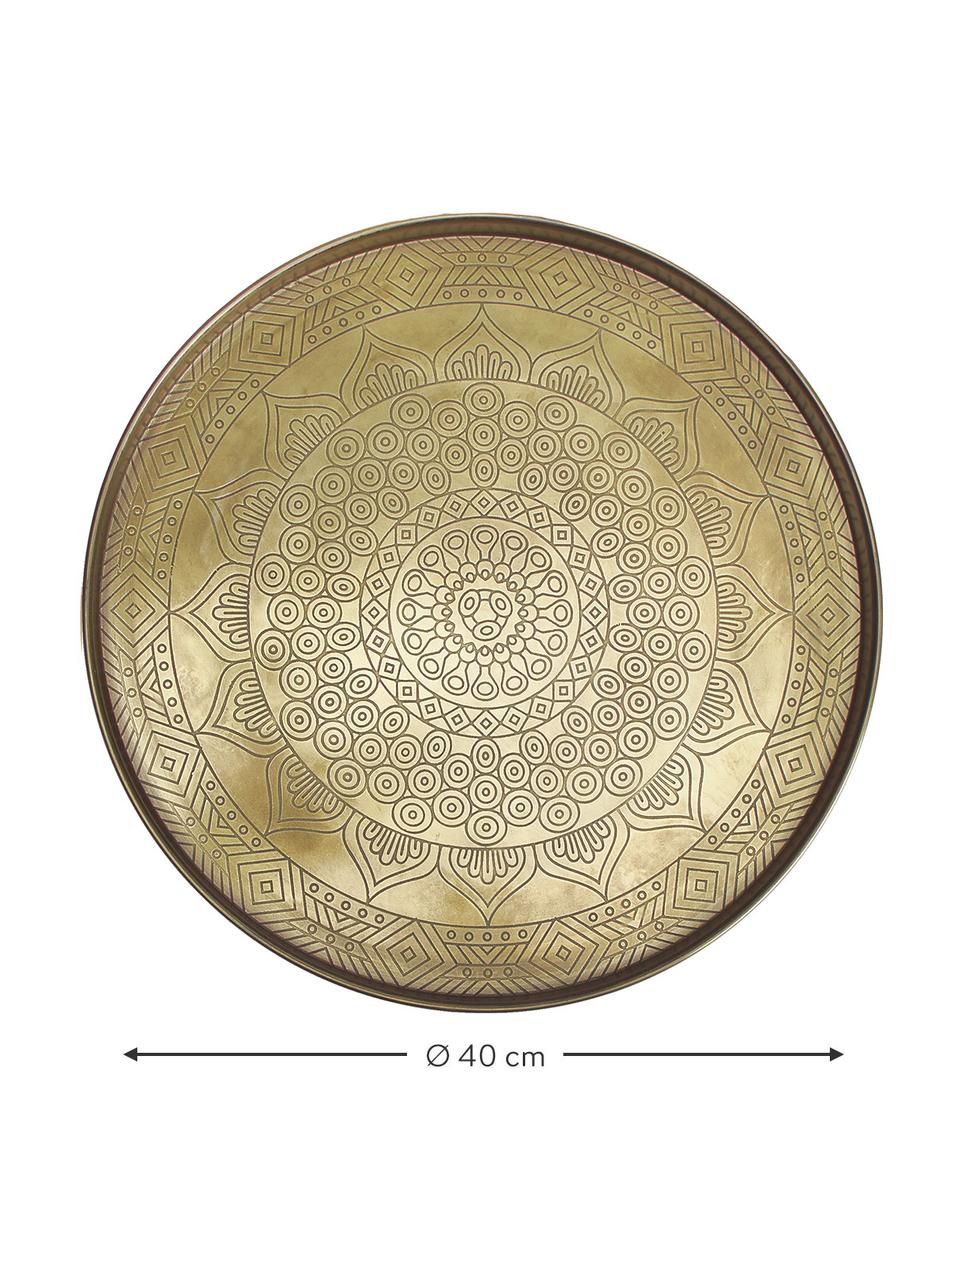 Großes Deko-Tablett Conan aus Metall, Metall, beschichtet, Messingfarben, Ø 40 cm